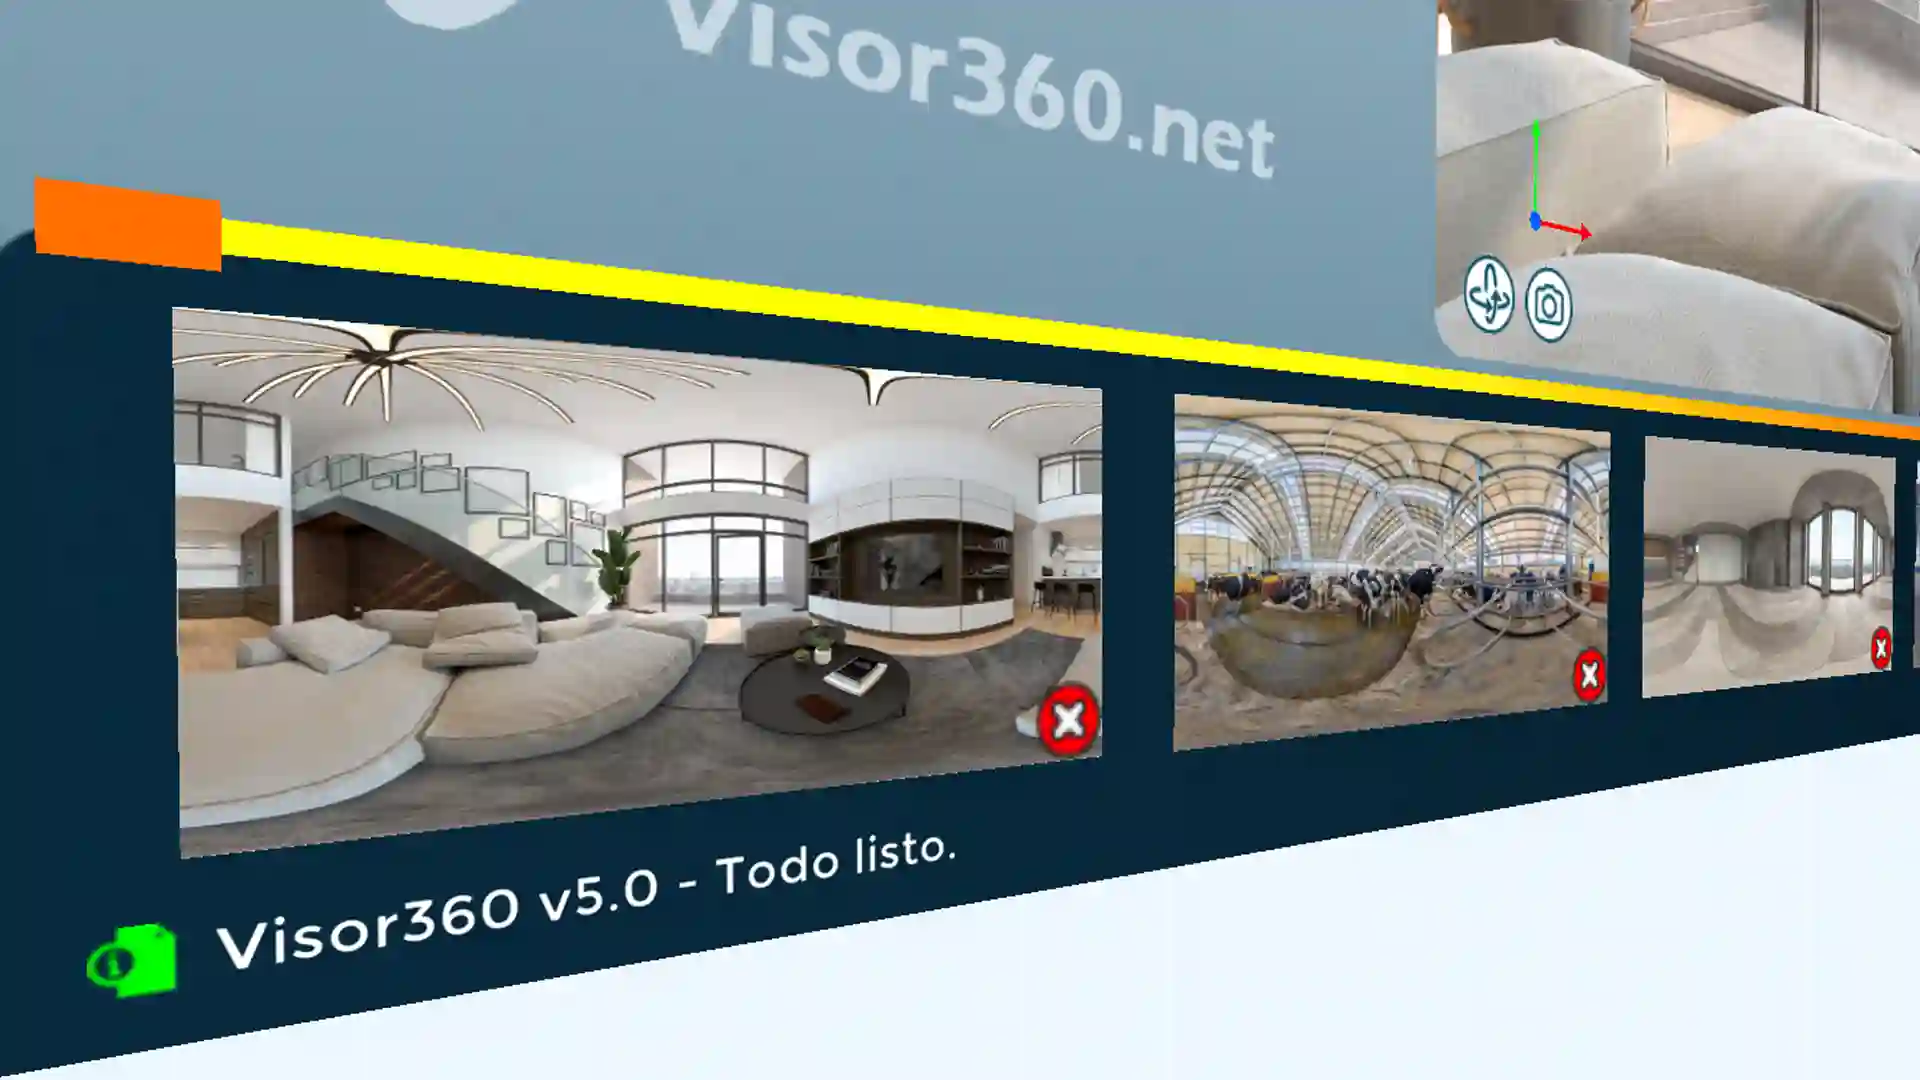 Galería de imágenes 360 - Características de Visor360